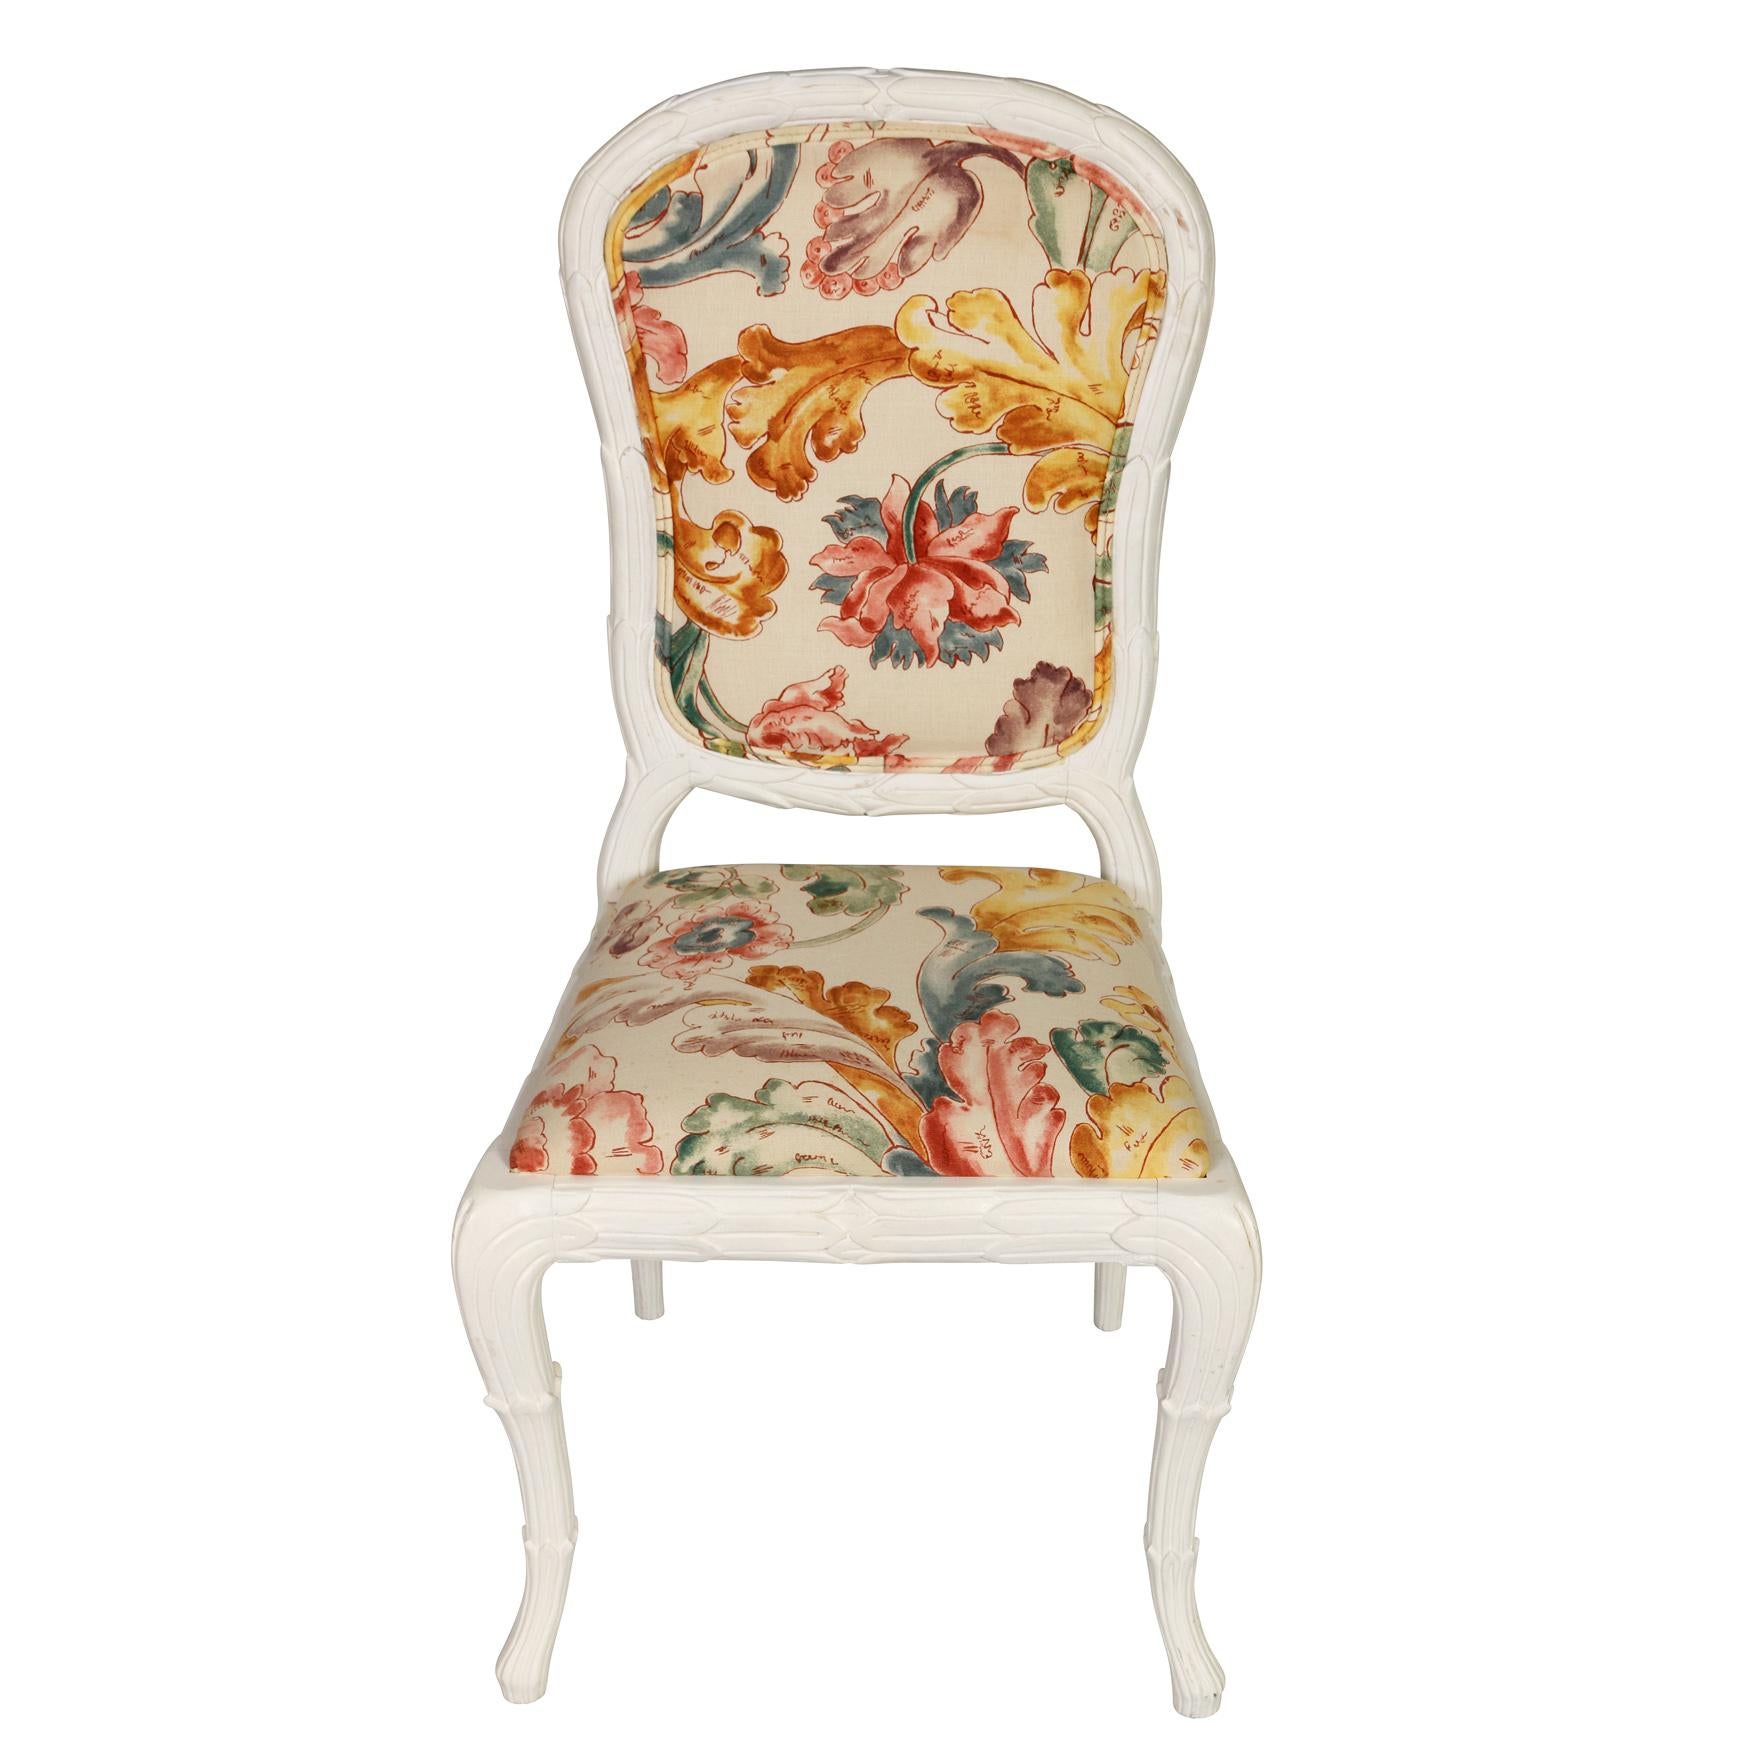 Une paire de chaises de salle à manger peintes et sculptées avec beaucoup de personnalité.  L'ensemble, composé de deux fauteuils et de huit chaises d'appoint, a des cadres peints en blanc, avec de jolis détails sculptés.  Le tissu floral est en